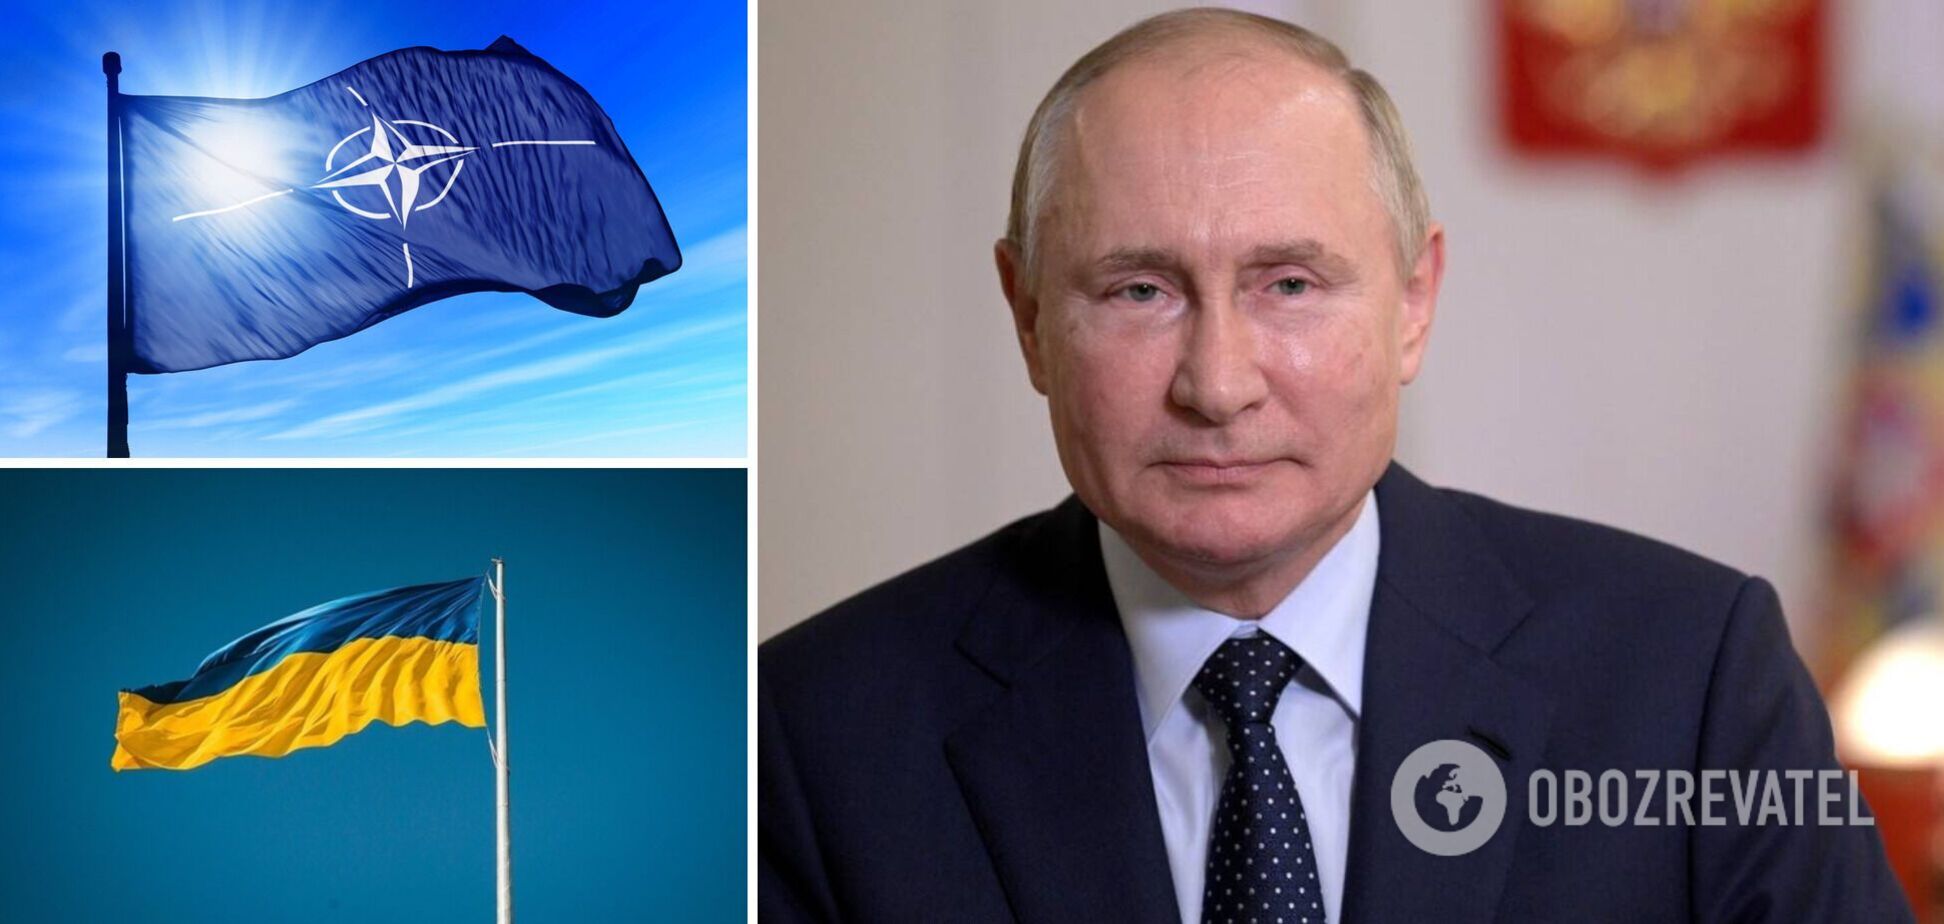 Пєсков: Путін готовий вести переговори щодо України та 'гарантій безпеки'